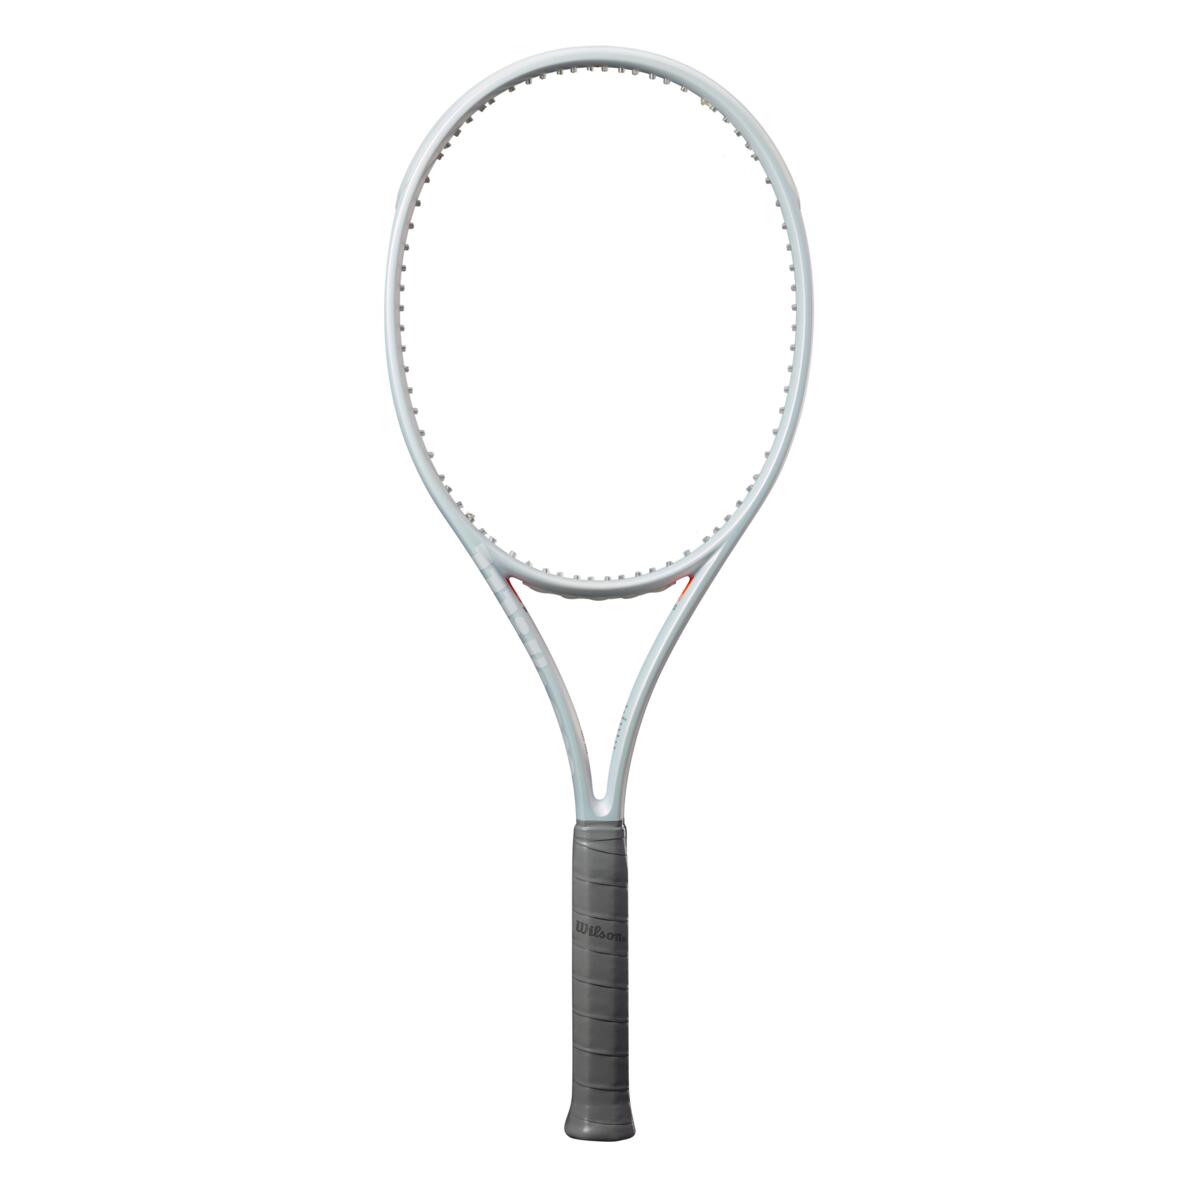 Raqueta de Tenis  Shift 99 Pro V1